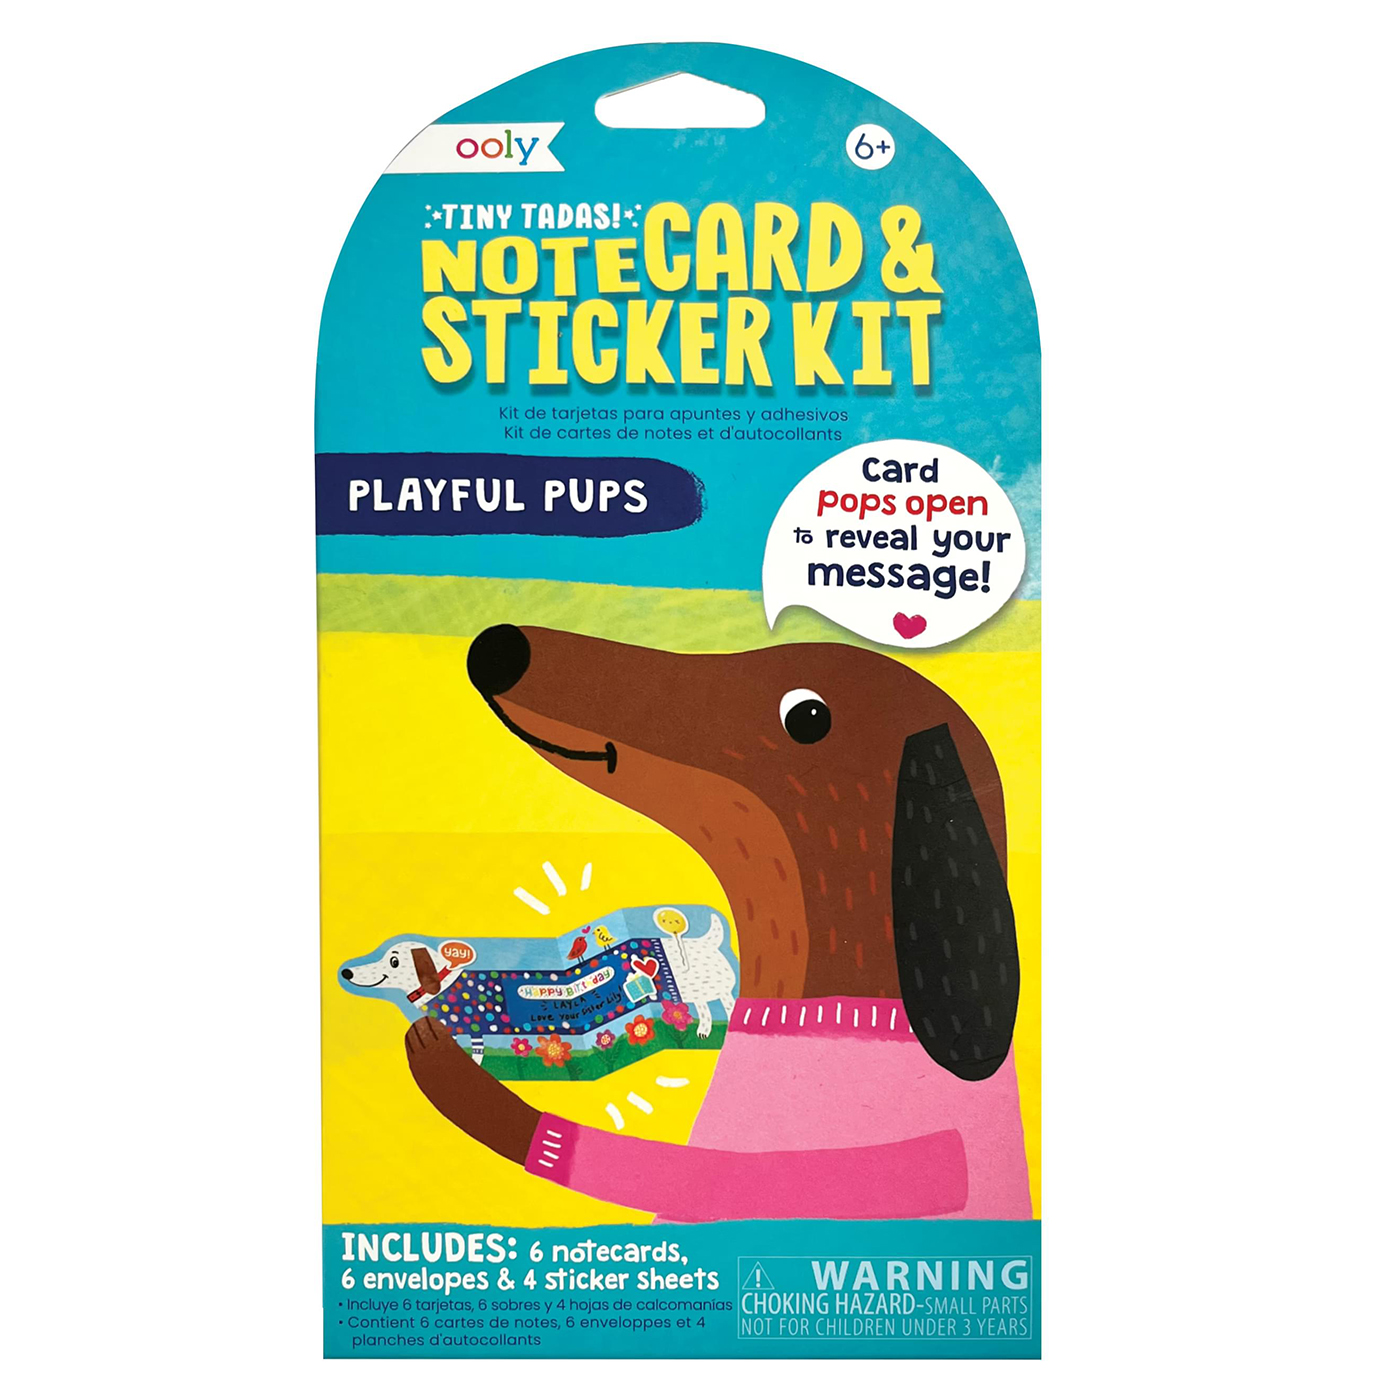  Ooly Tiny Tadas! Not Kartları ve Çıkartma Seti - Playful Pups